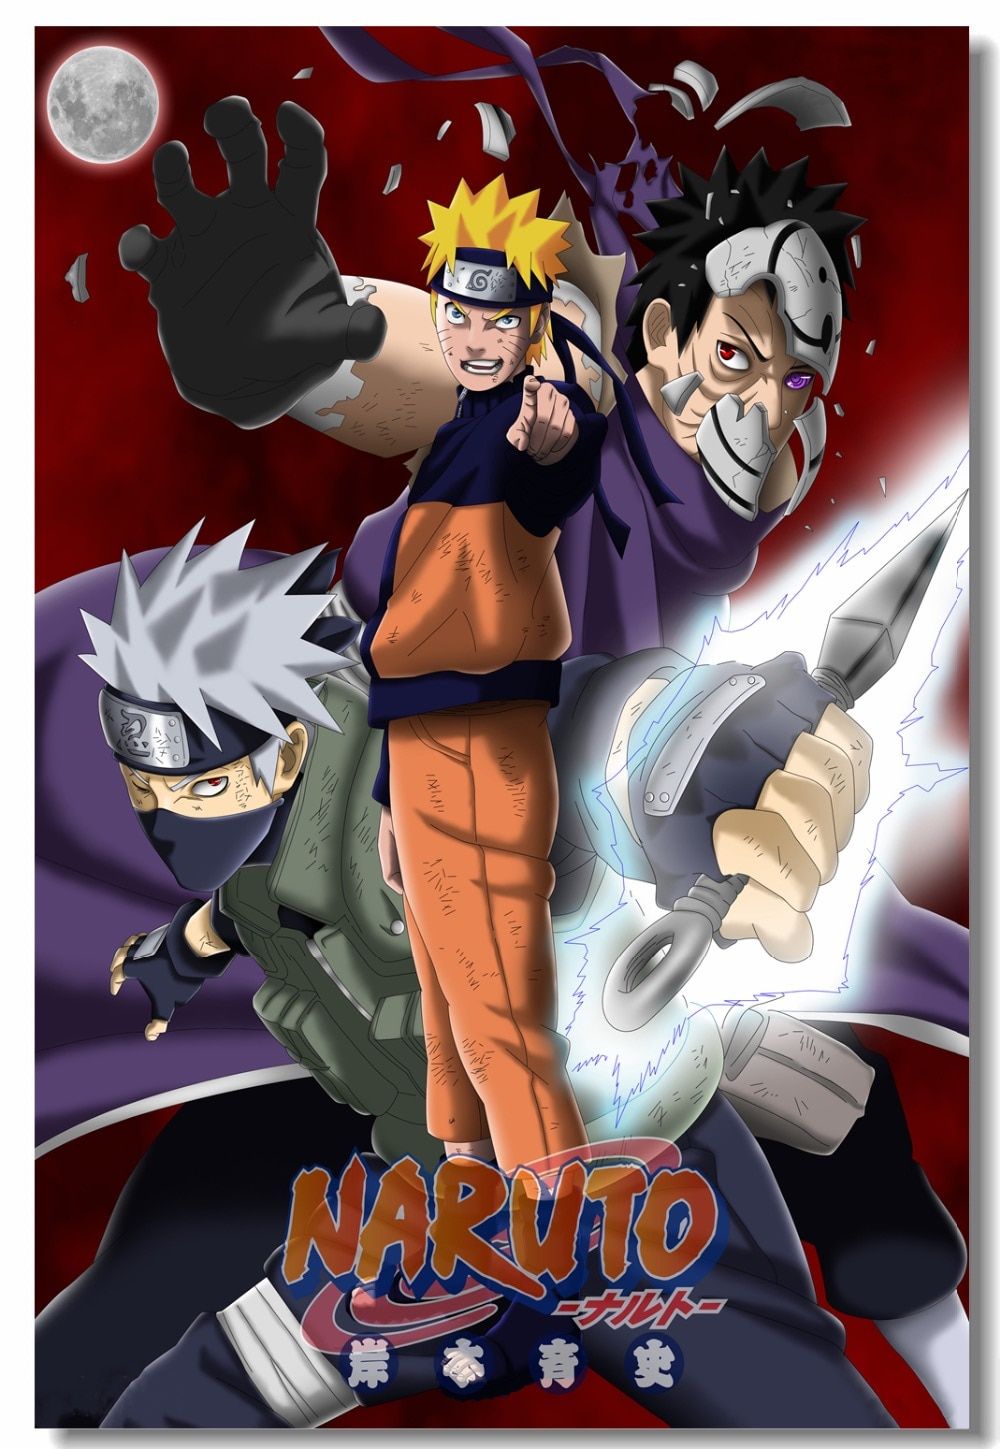 Anime Naruto Gaming Anime Cool Wallpaper